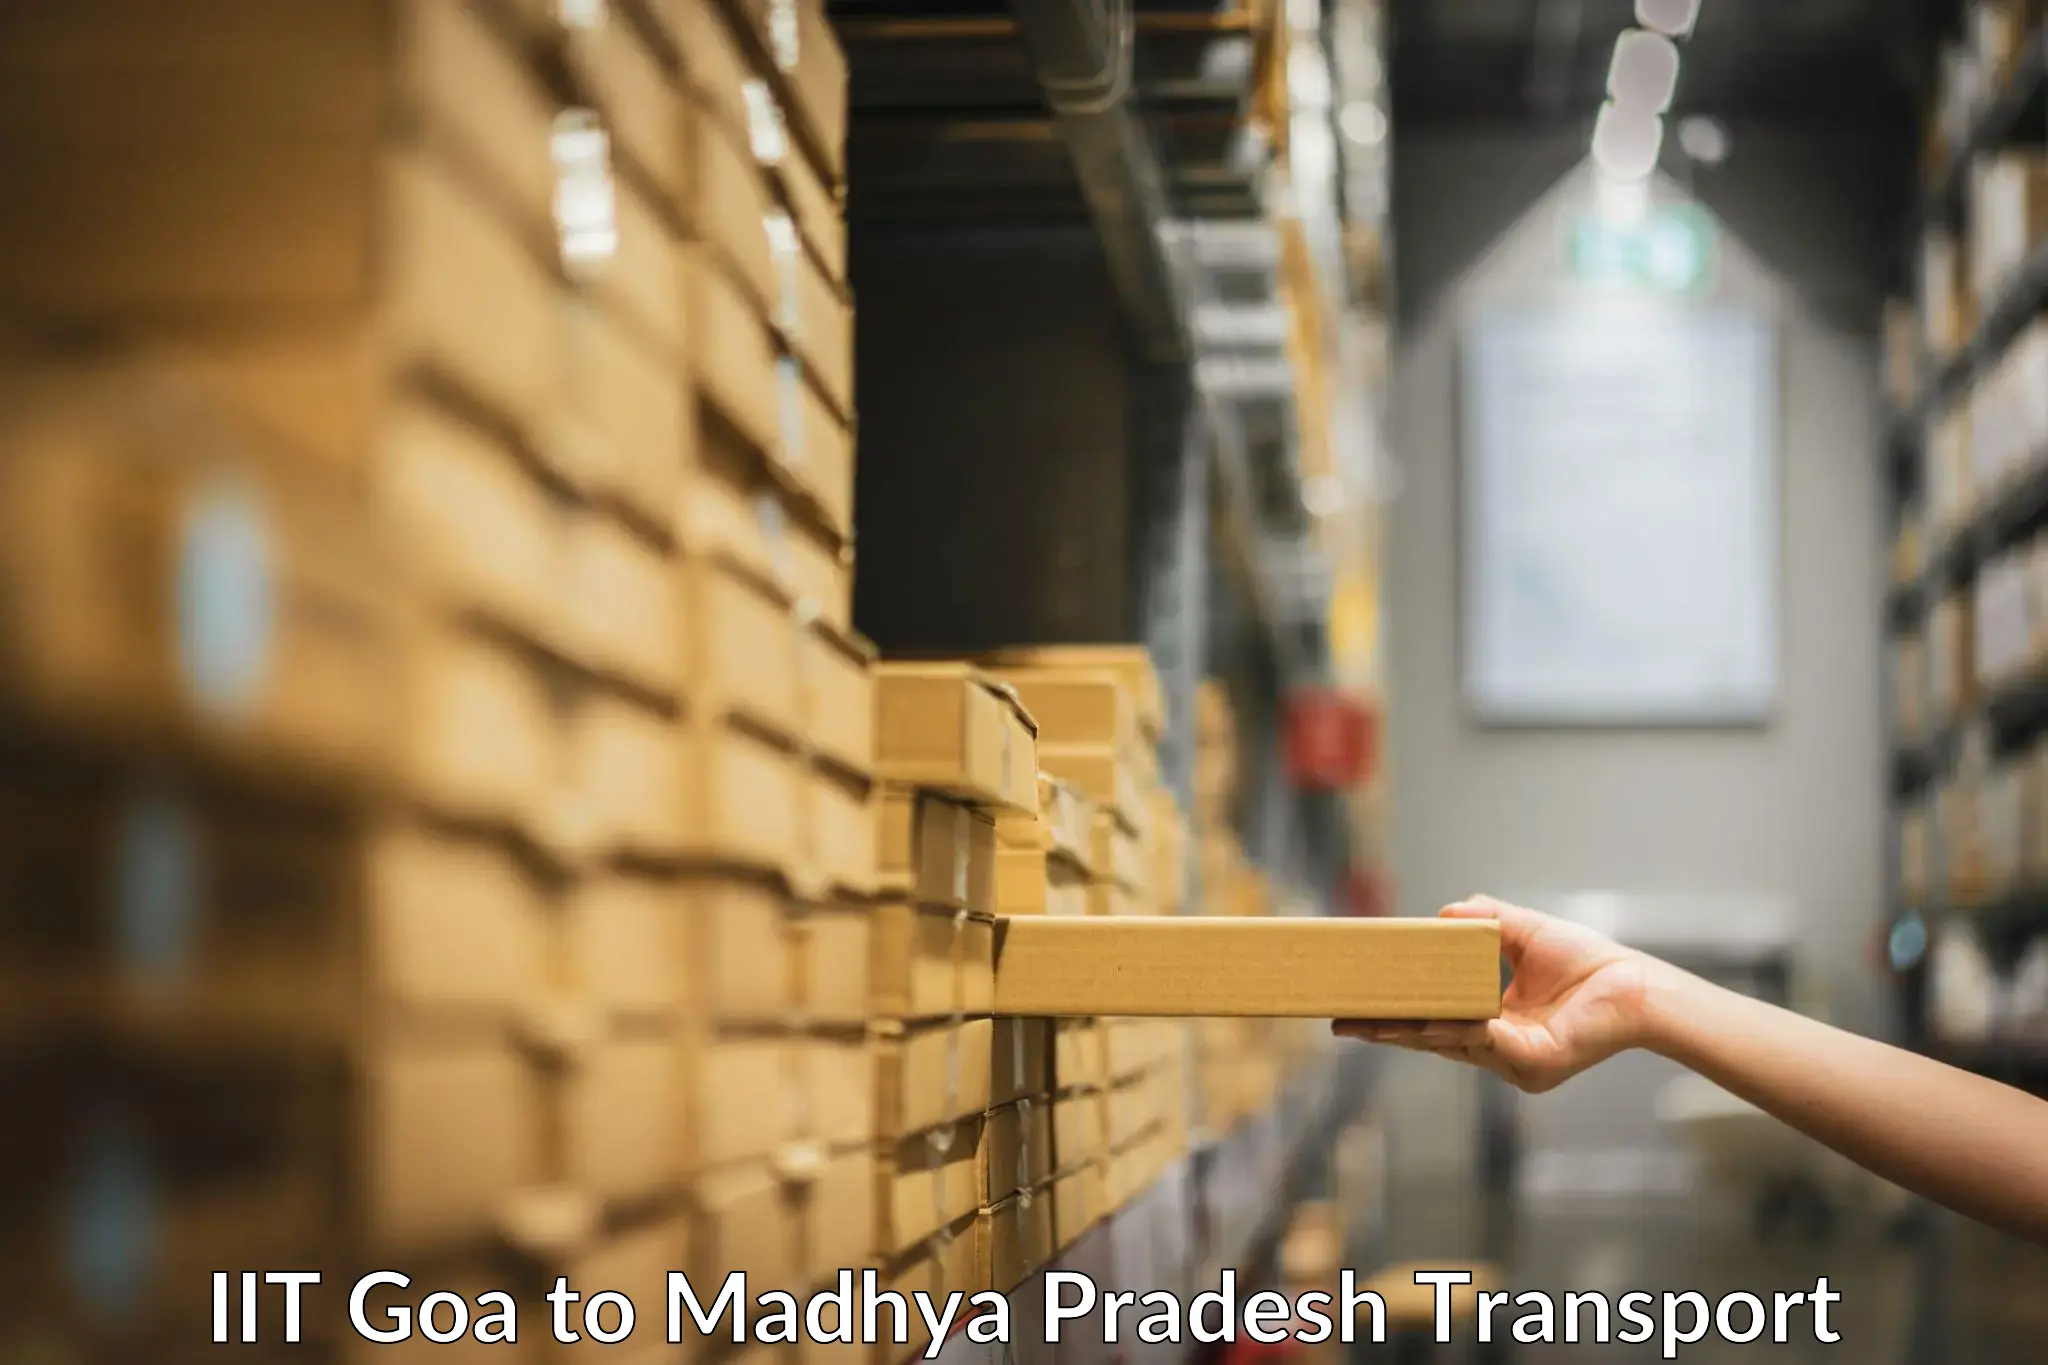 Intercity goods transport IIT Goa to Madhya Pradesh